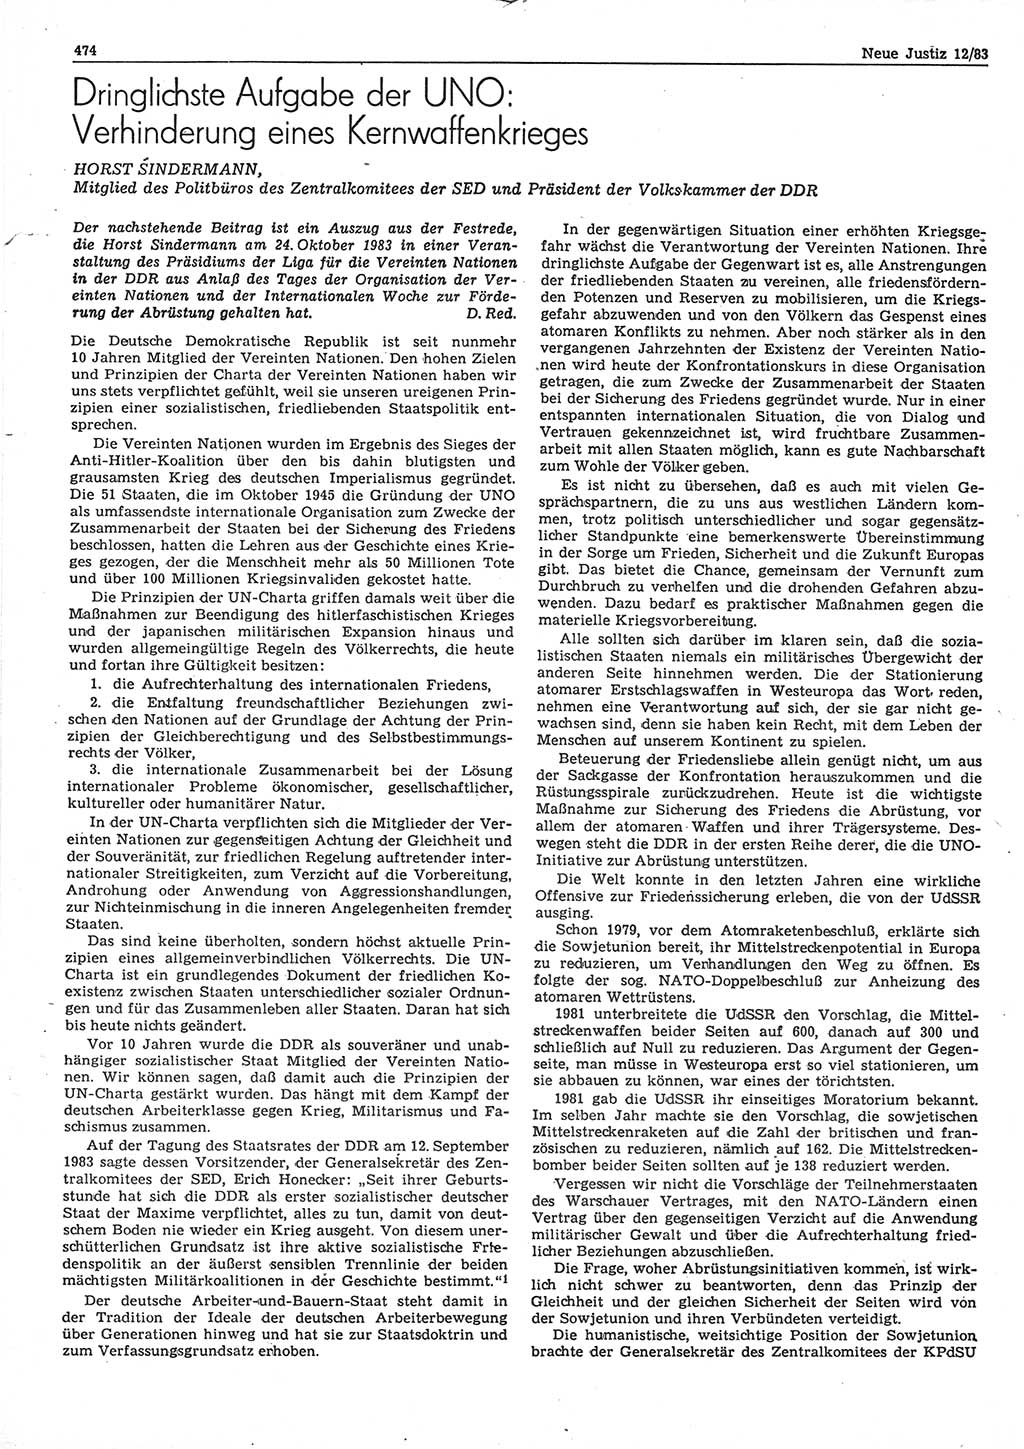 Neue Justiz (NJ), Zeitschrift für sozialistisches Recht und Gesetzlichkeit [Deutsche Demokratische Republik (DDR)], 37. Jahrgang 1983, Seite 474 (NJ DDR 1983, S. 474)